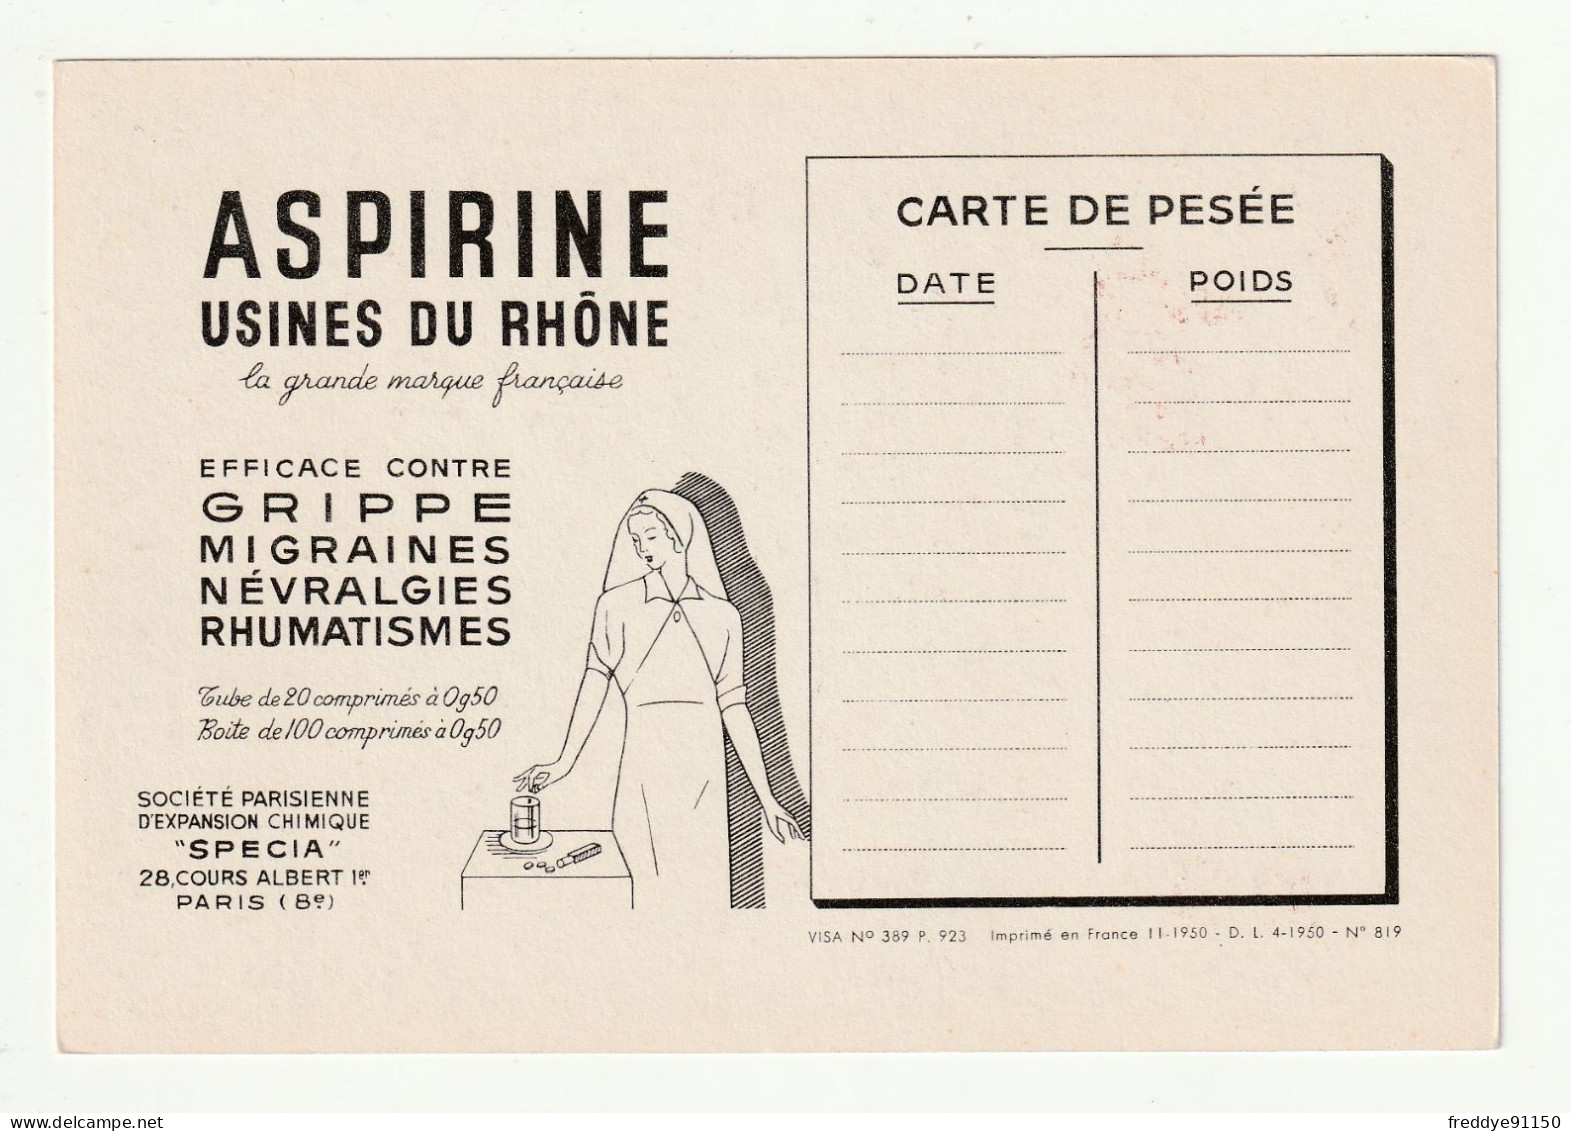 28 . Chartres . Publicite Aspirine  . Les Corporations D'apres Les Vitraux De La Cathedrale . Les Maréchaux - Chartres